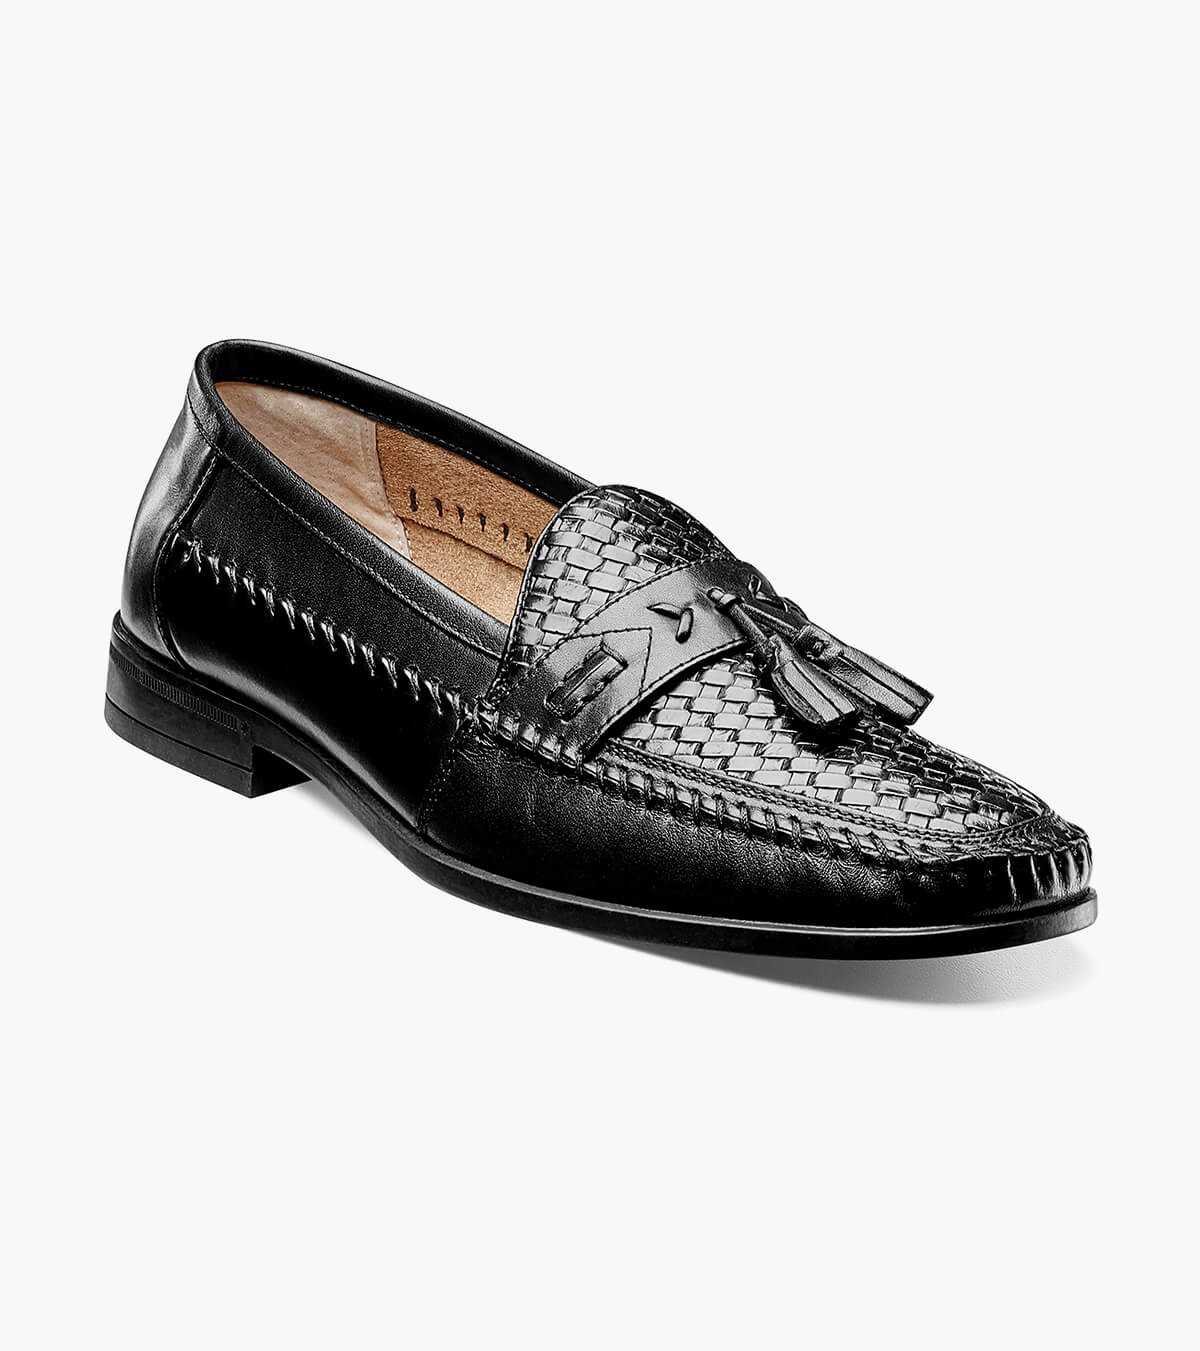 Nunn Bush 84484 001 Strafford Woven Black Leather Men's Slip-On Loafer Shoes